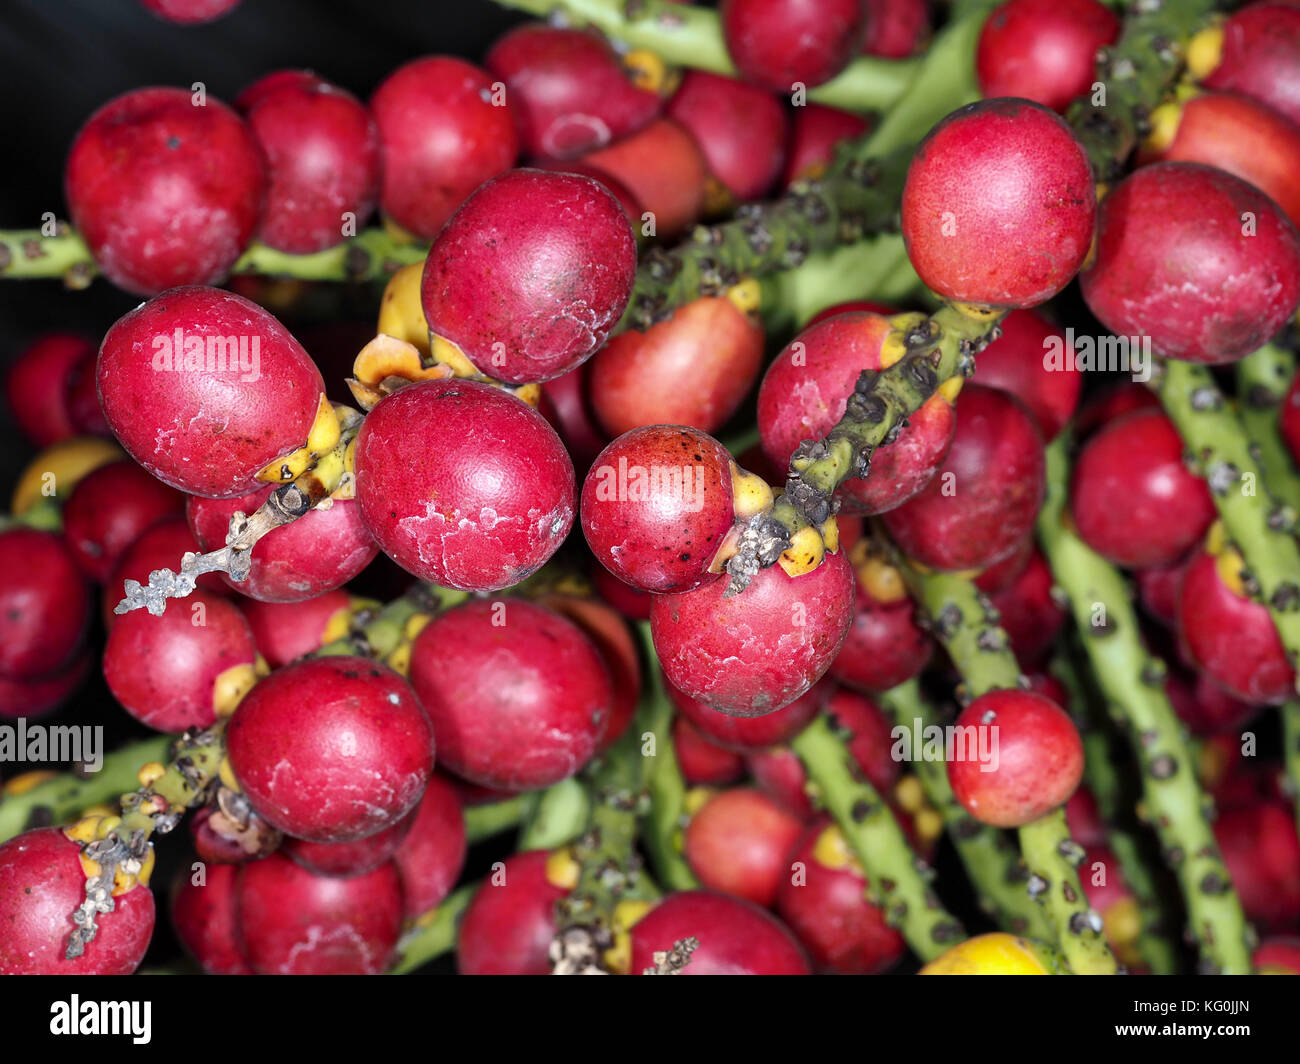 Sucre de palme naine (Arenga engleri) fruits (connue pour causer une réaction allergique grave), close-up Banque D'Images